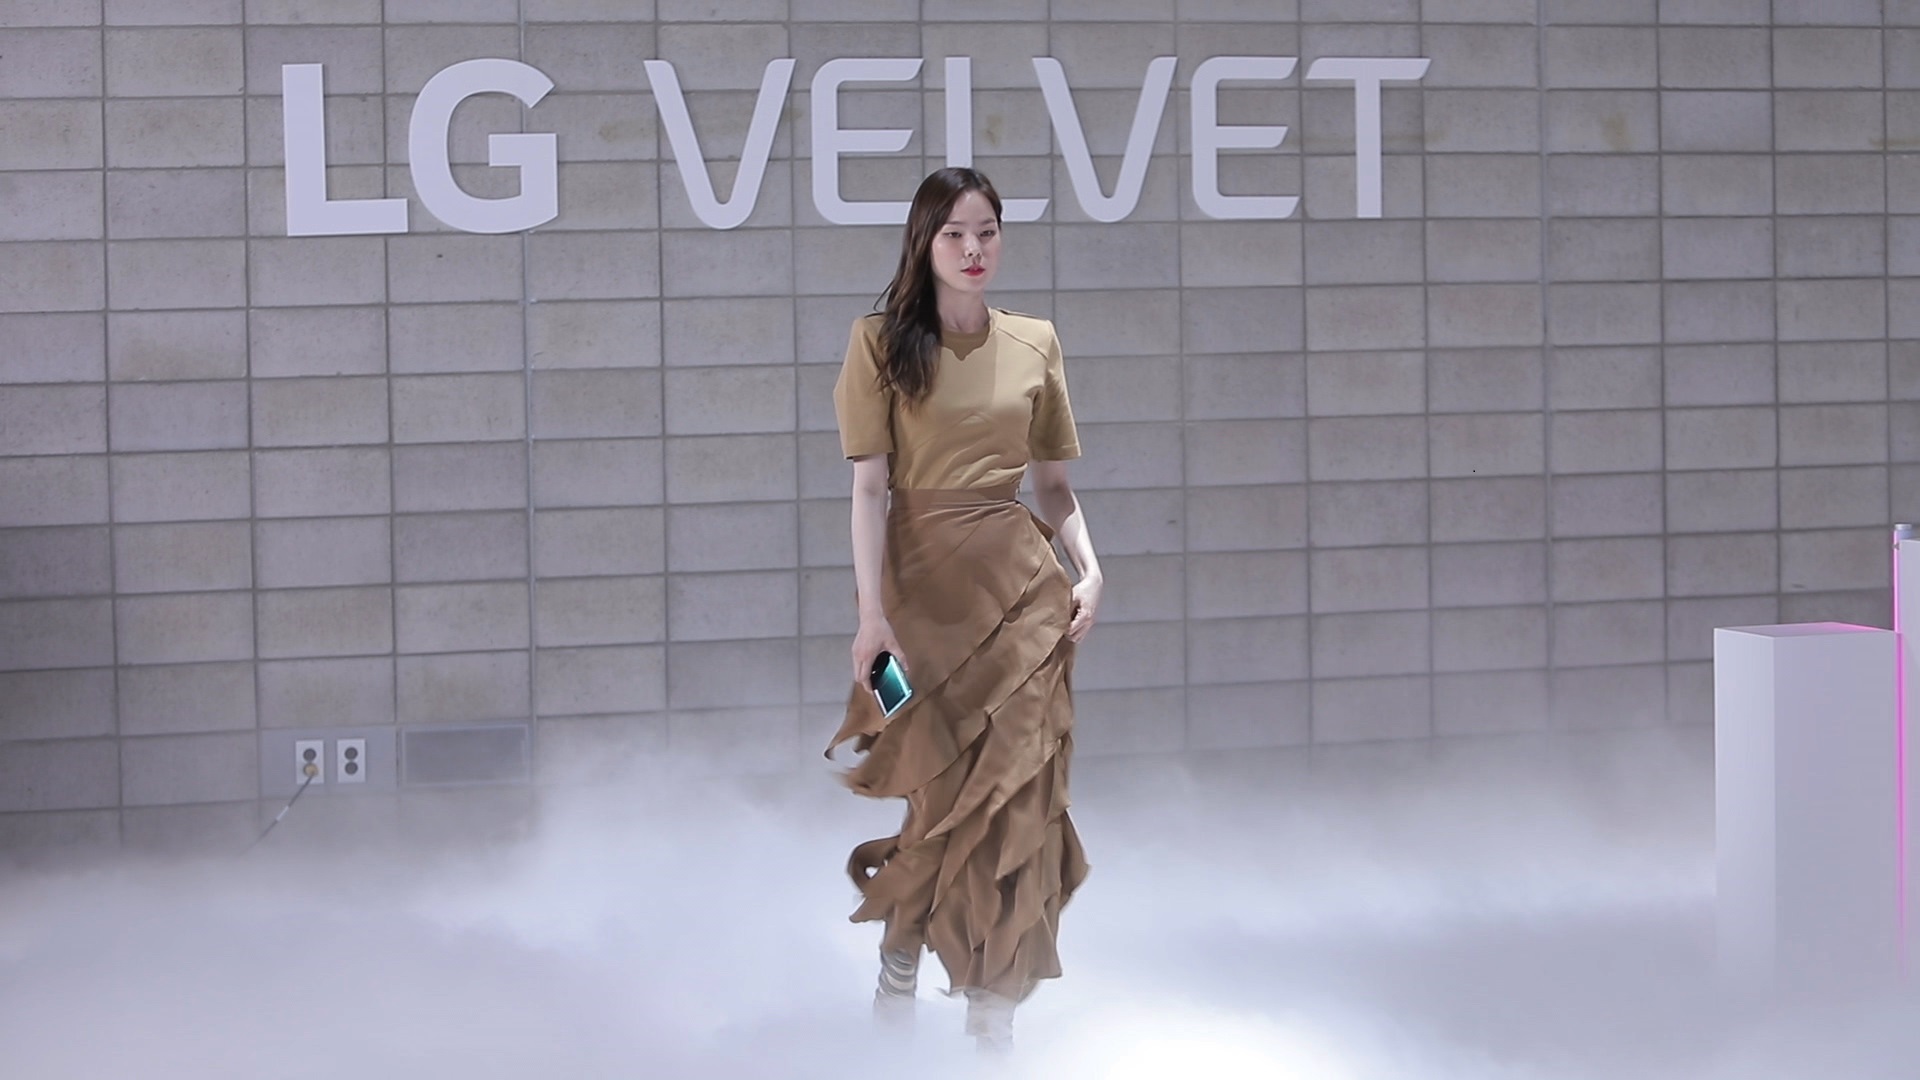 코로나19로 사회적 거리두기를 실천하고자 온라인 패션쇼로 공개행사를 열었던 LG 벨벳이 공중파 예능프로그램에서 소개됐다. 사진은 '사장님 귀는 당나귀 귀' 영상 캡쳐   